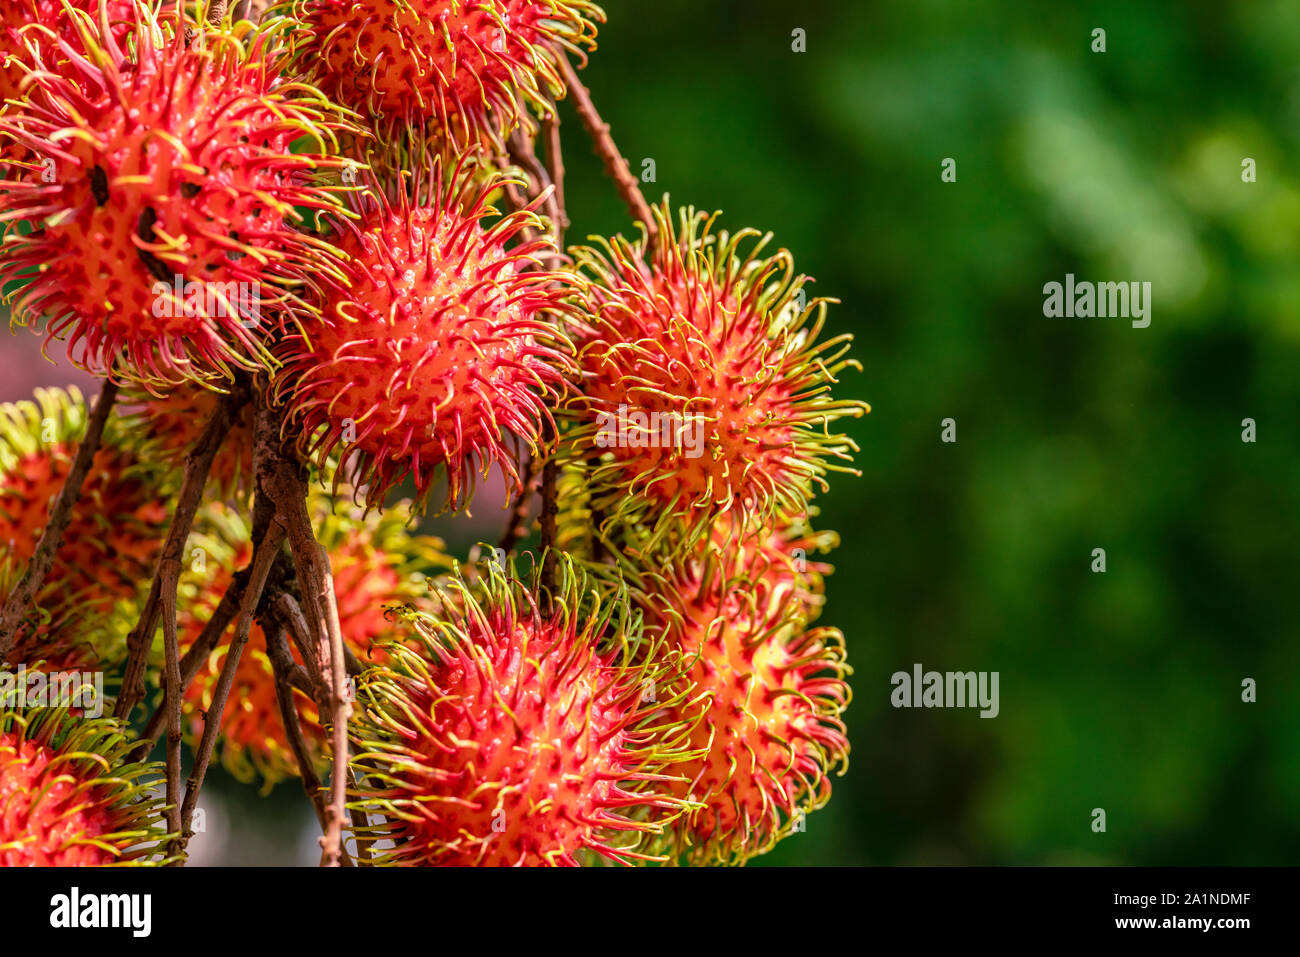 Tolle Nahaufnahmen der reifen Früchte Rambutan (Nephelium lappaceum) Hängen an einem Baum Stockfoto